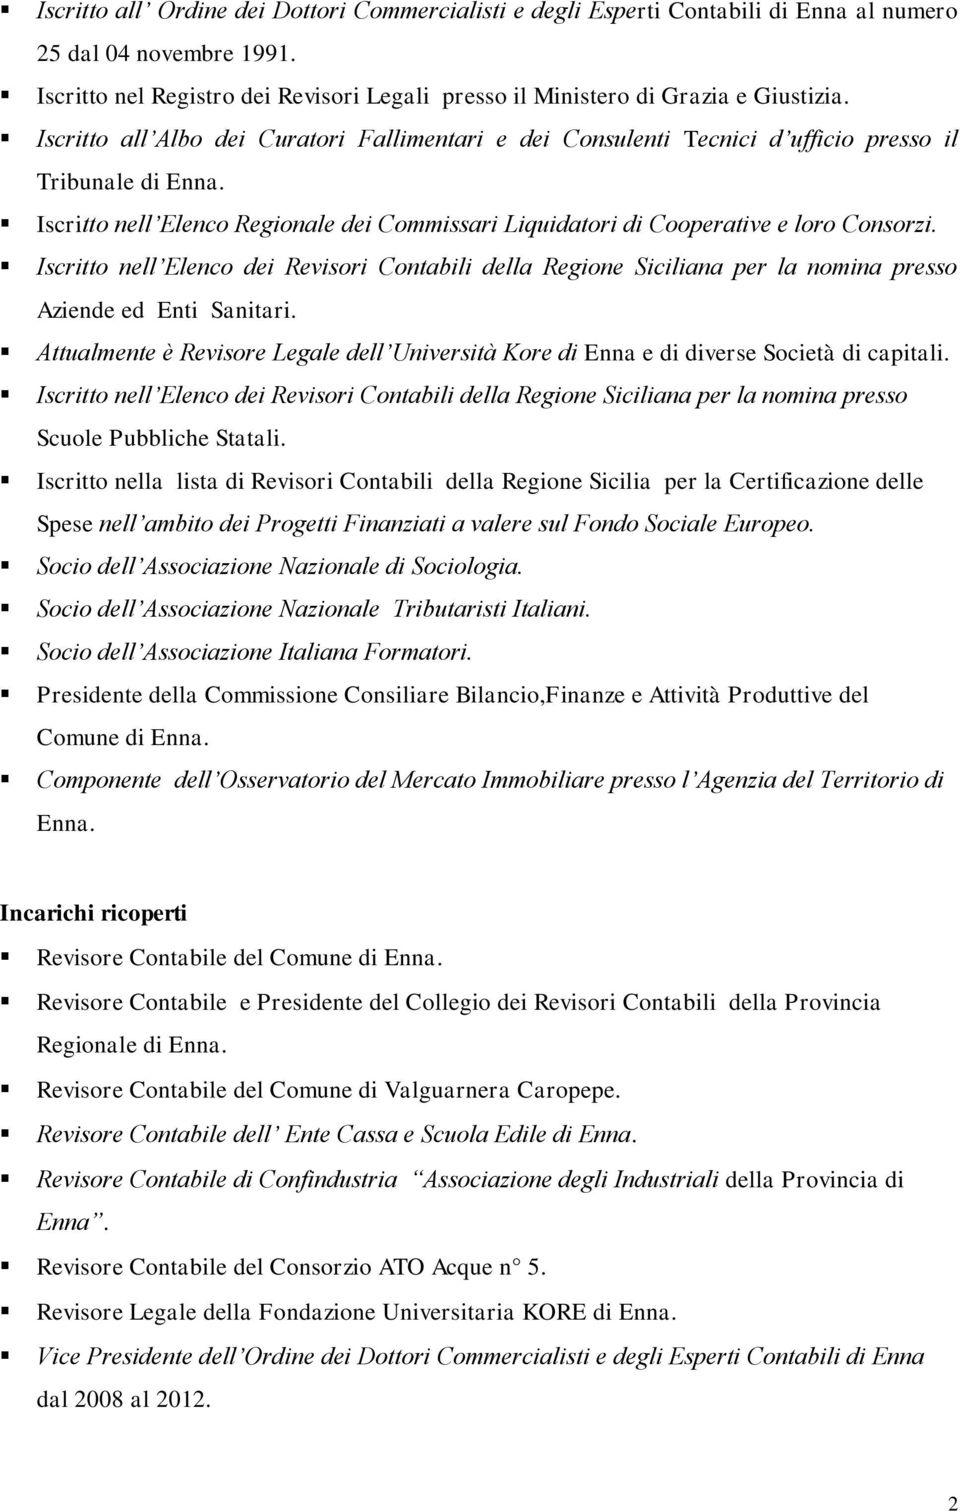 Iscritto nell Elenco dei Revisori Contabili della Regione Siciliana per la nomina presso Aziende ed Enti Sanitari.